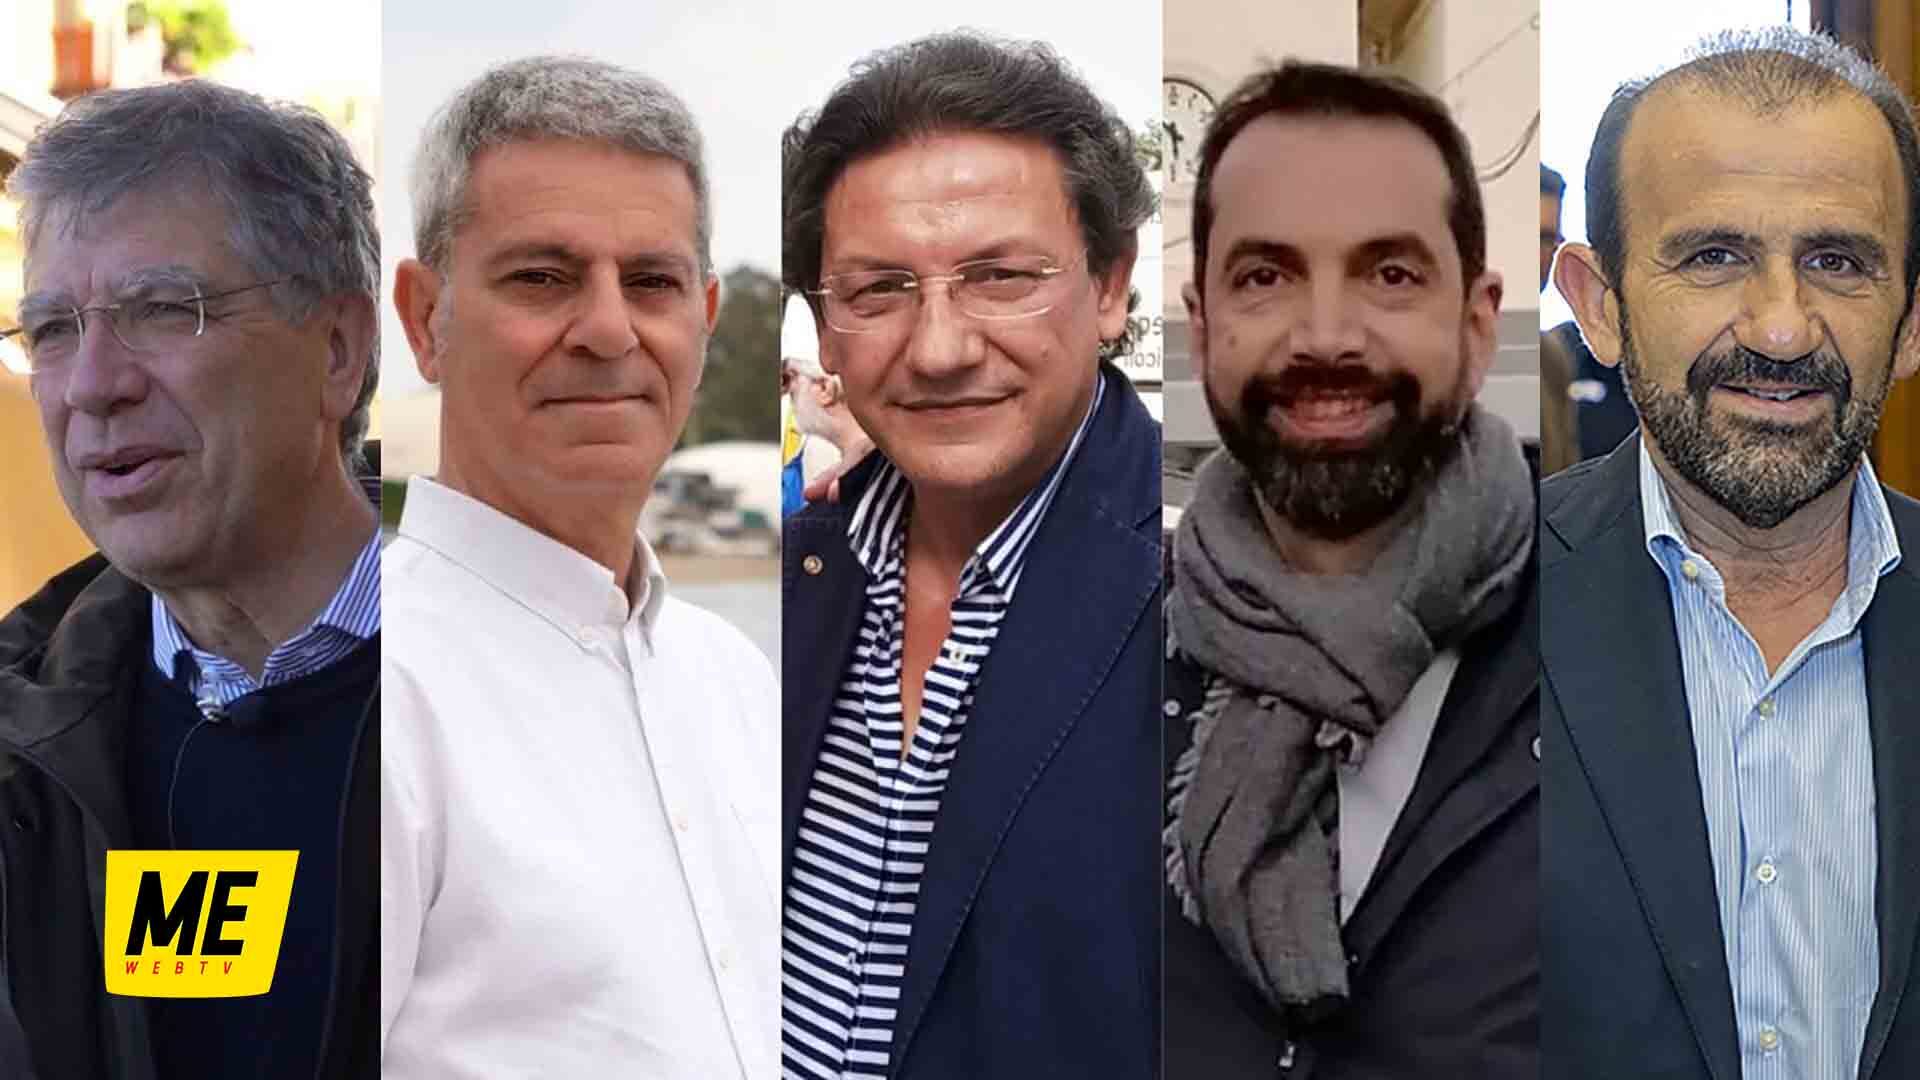 candidati sindaci_MessinaWebTV_ Elezioni 2022